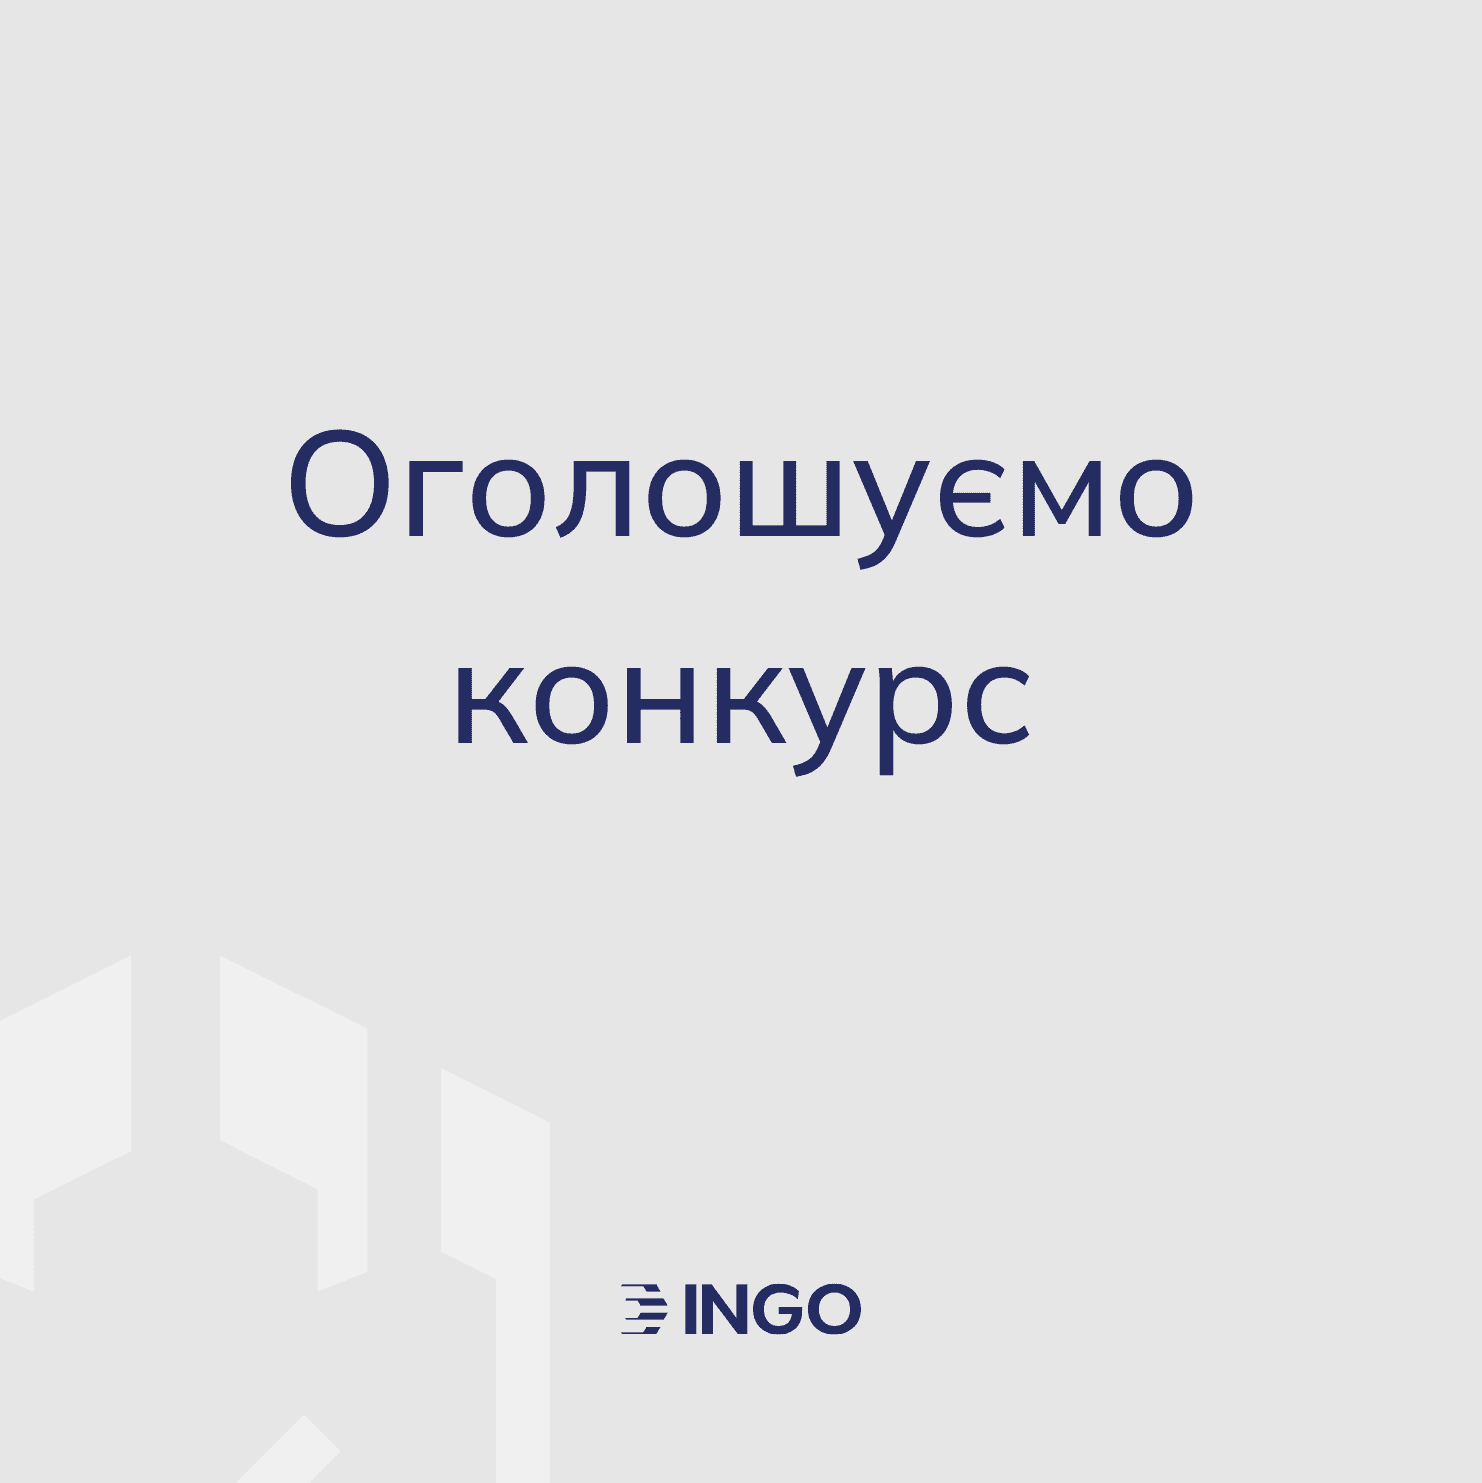 ИНГО объявляет открытый тендер для выбора подрядчика, предоставляющего услуги по производству видео контента